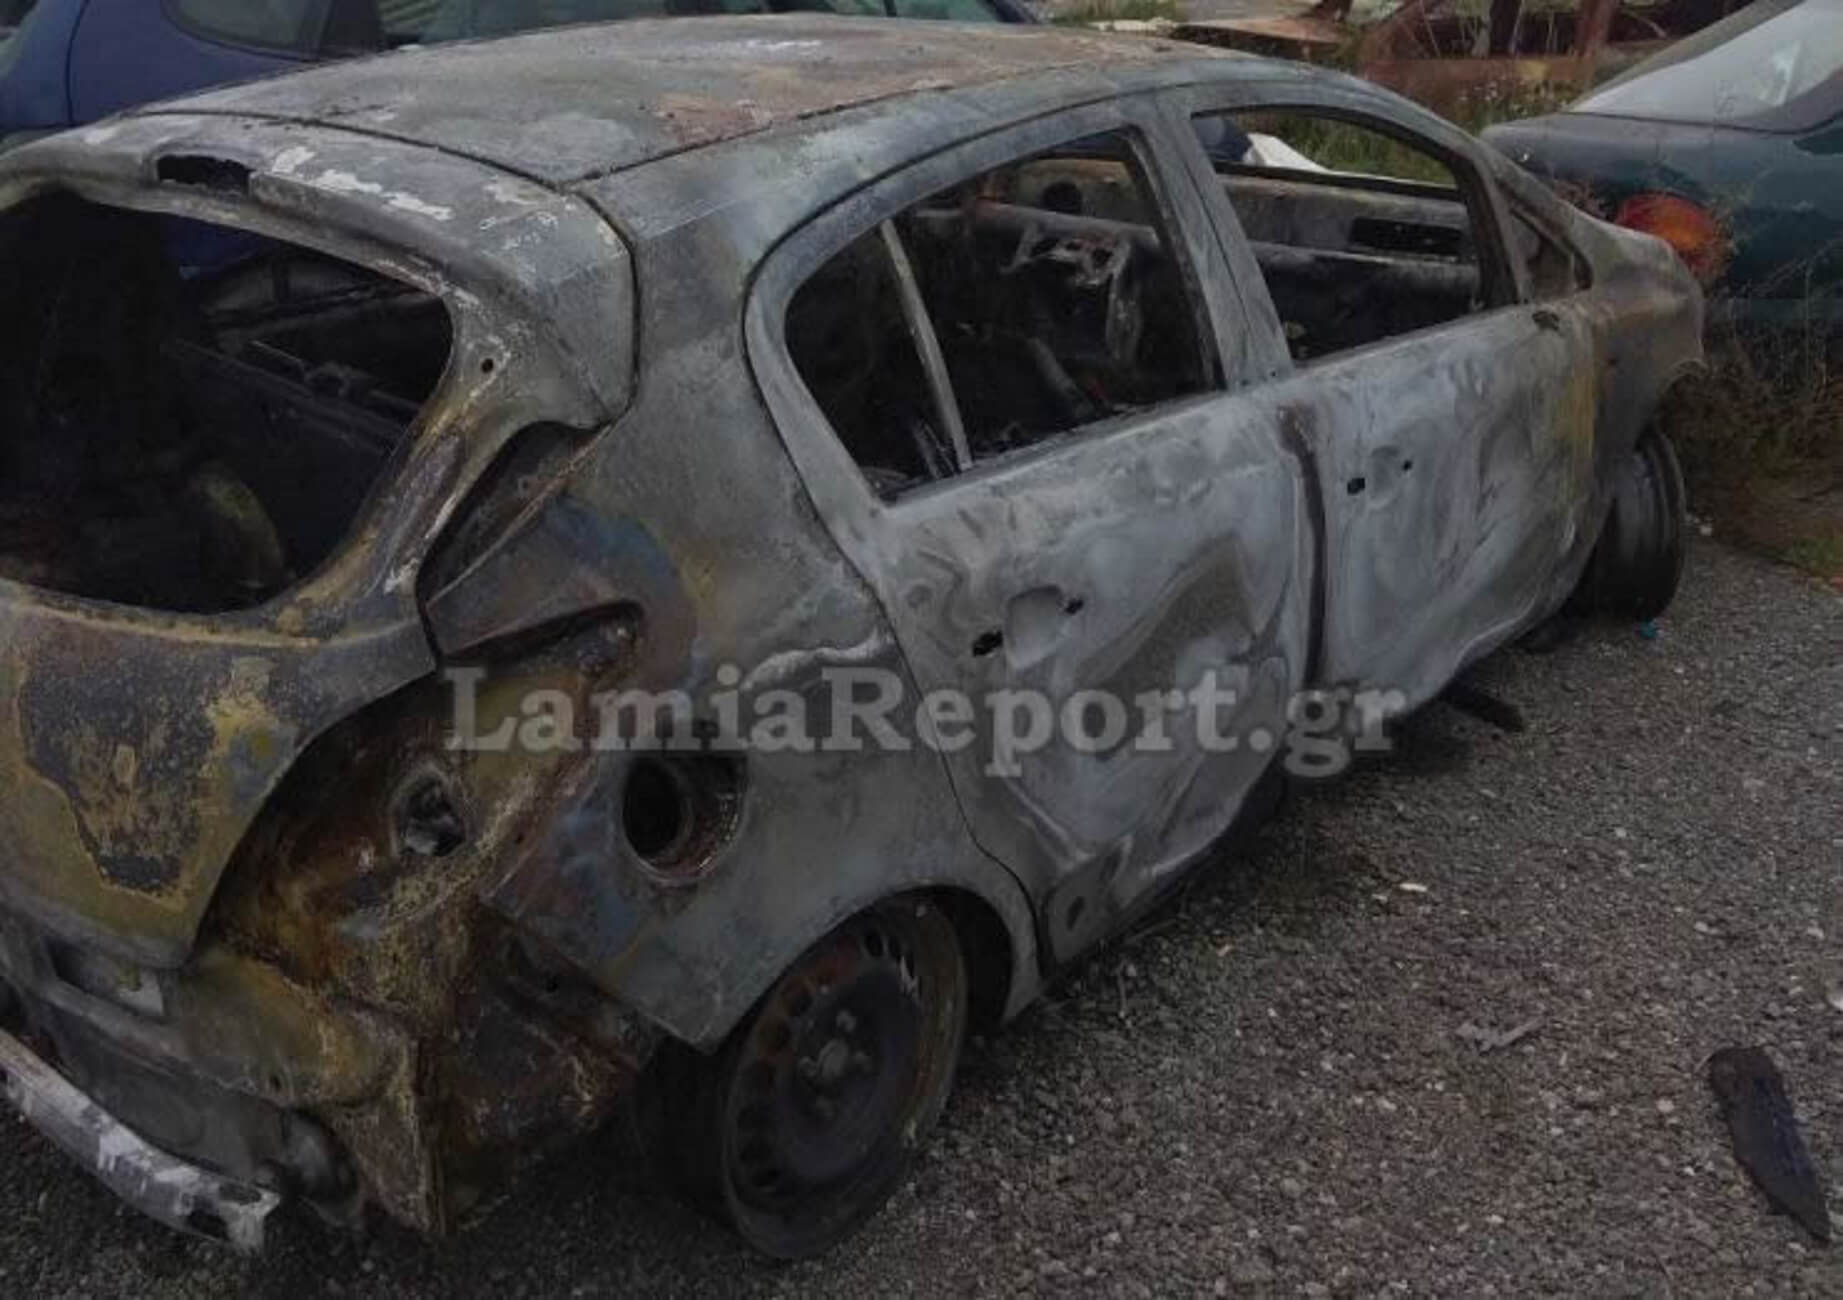 Φθιώτιδα: Αυτό είναι το αυτοκίνητο φιλάθλων της ΑΕΚ που έκαψαν οπαδοί του Ολυμπιακού – Μαχαιρώματα, απειλές και ξύλο [pics]